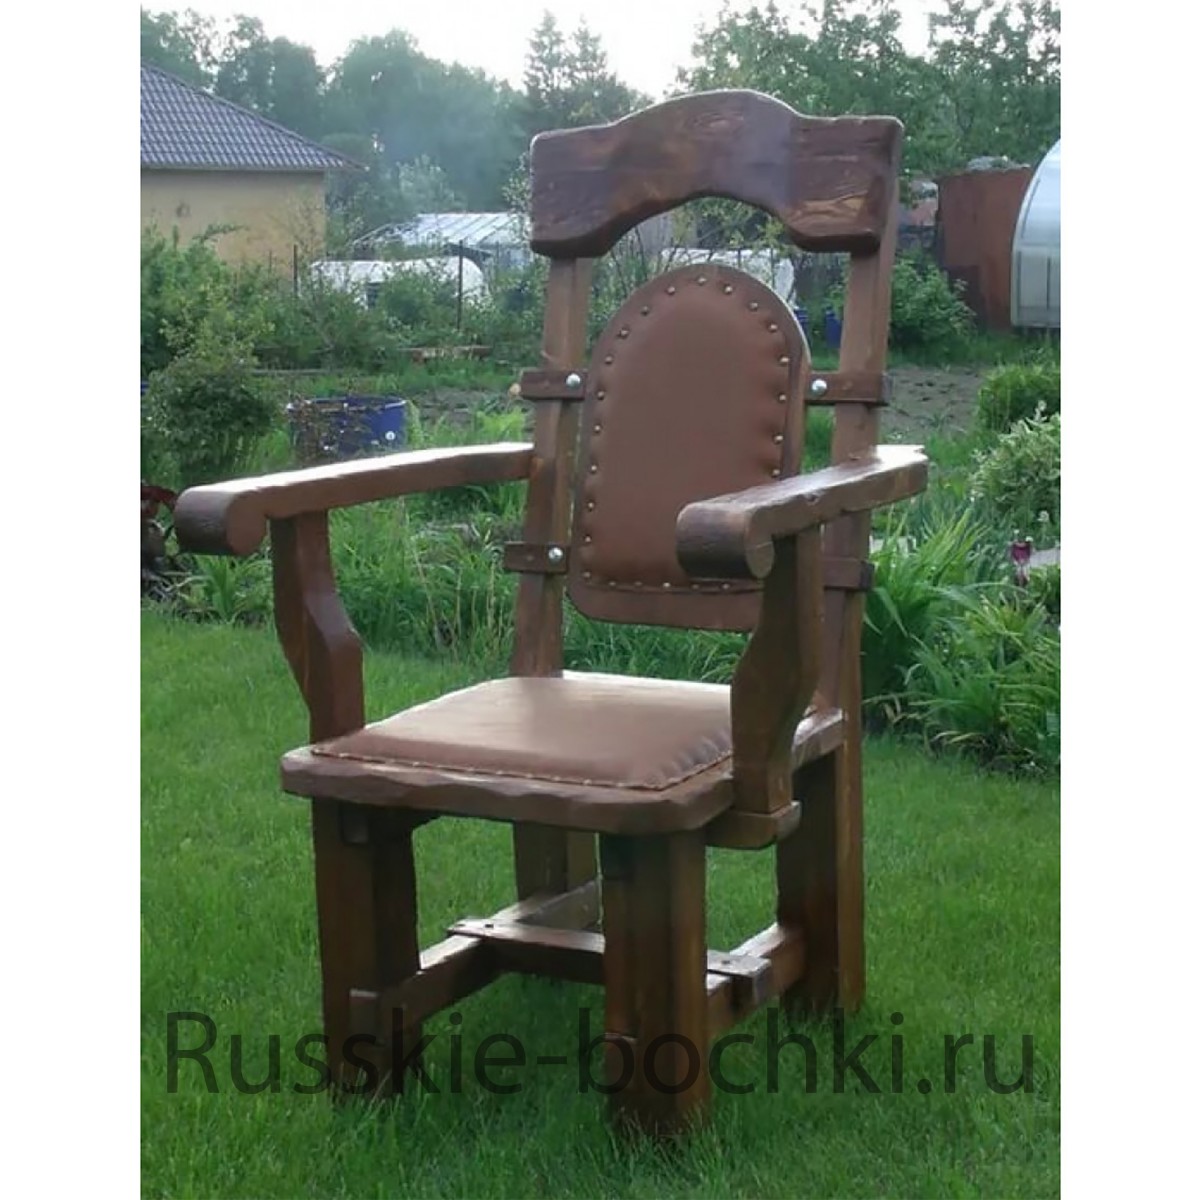 Изготовление кресла-качалки своими руками из фанеры, дерева или трубы